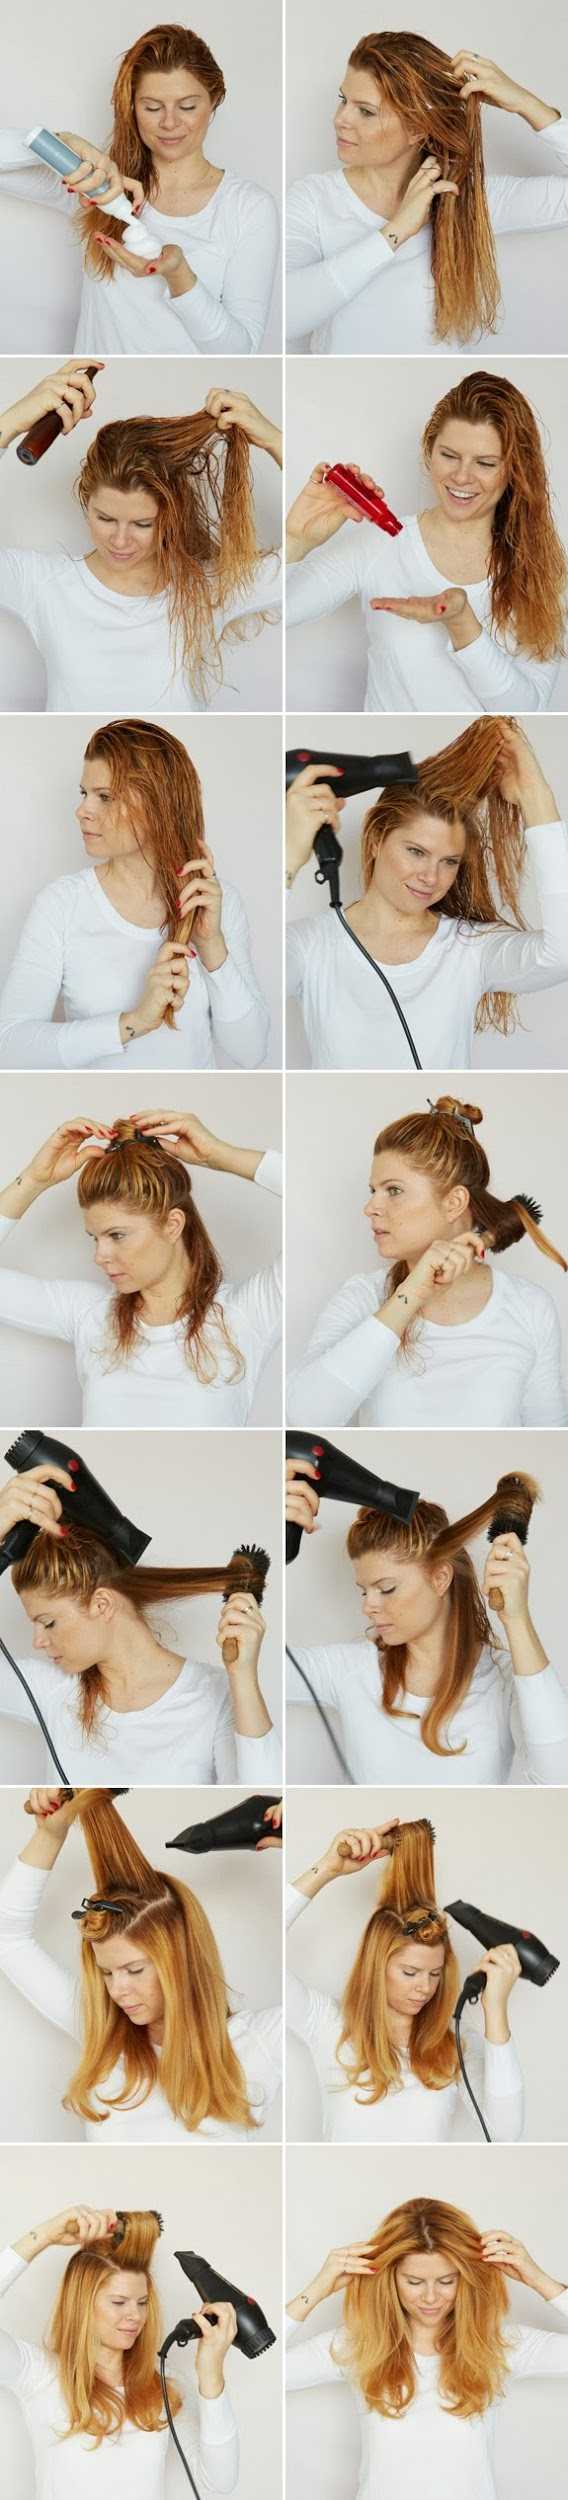 Правильная укладка волос с помощью фена